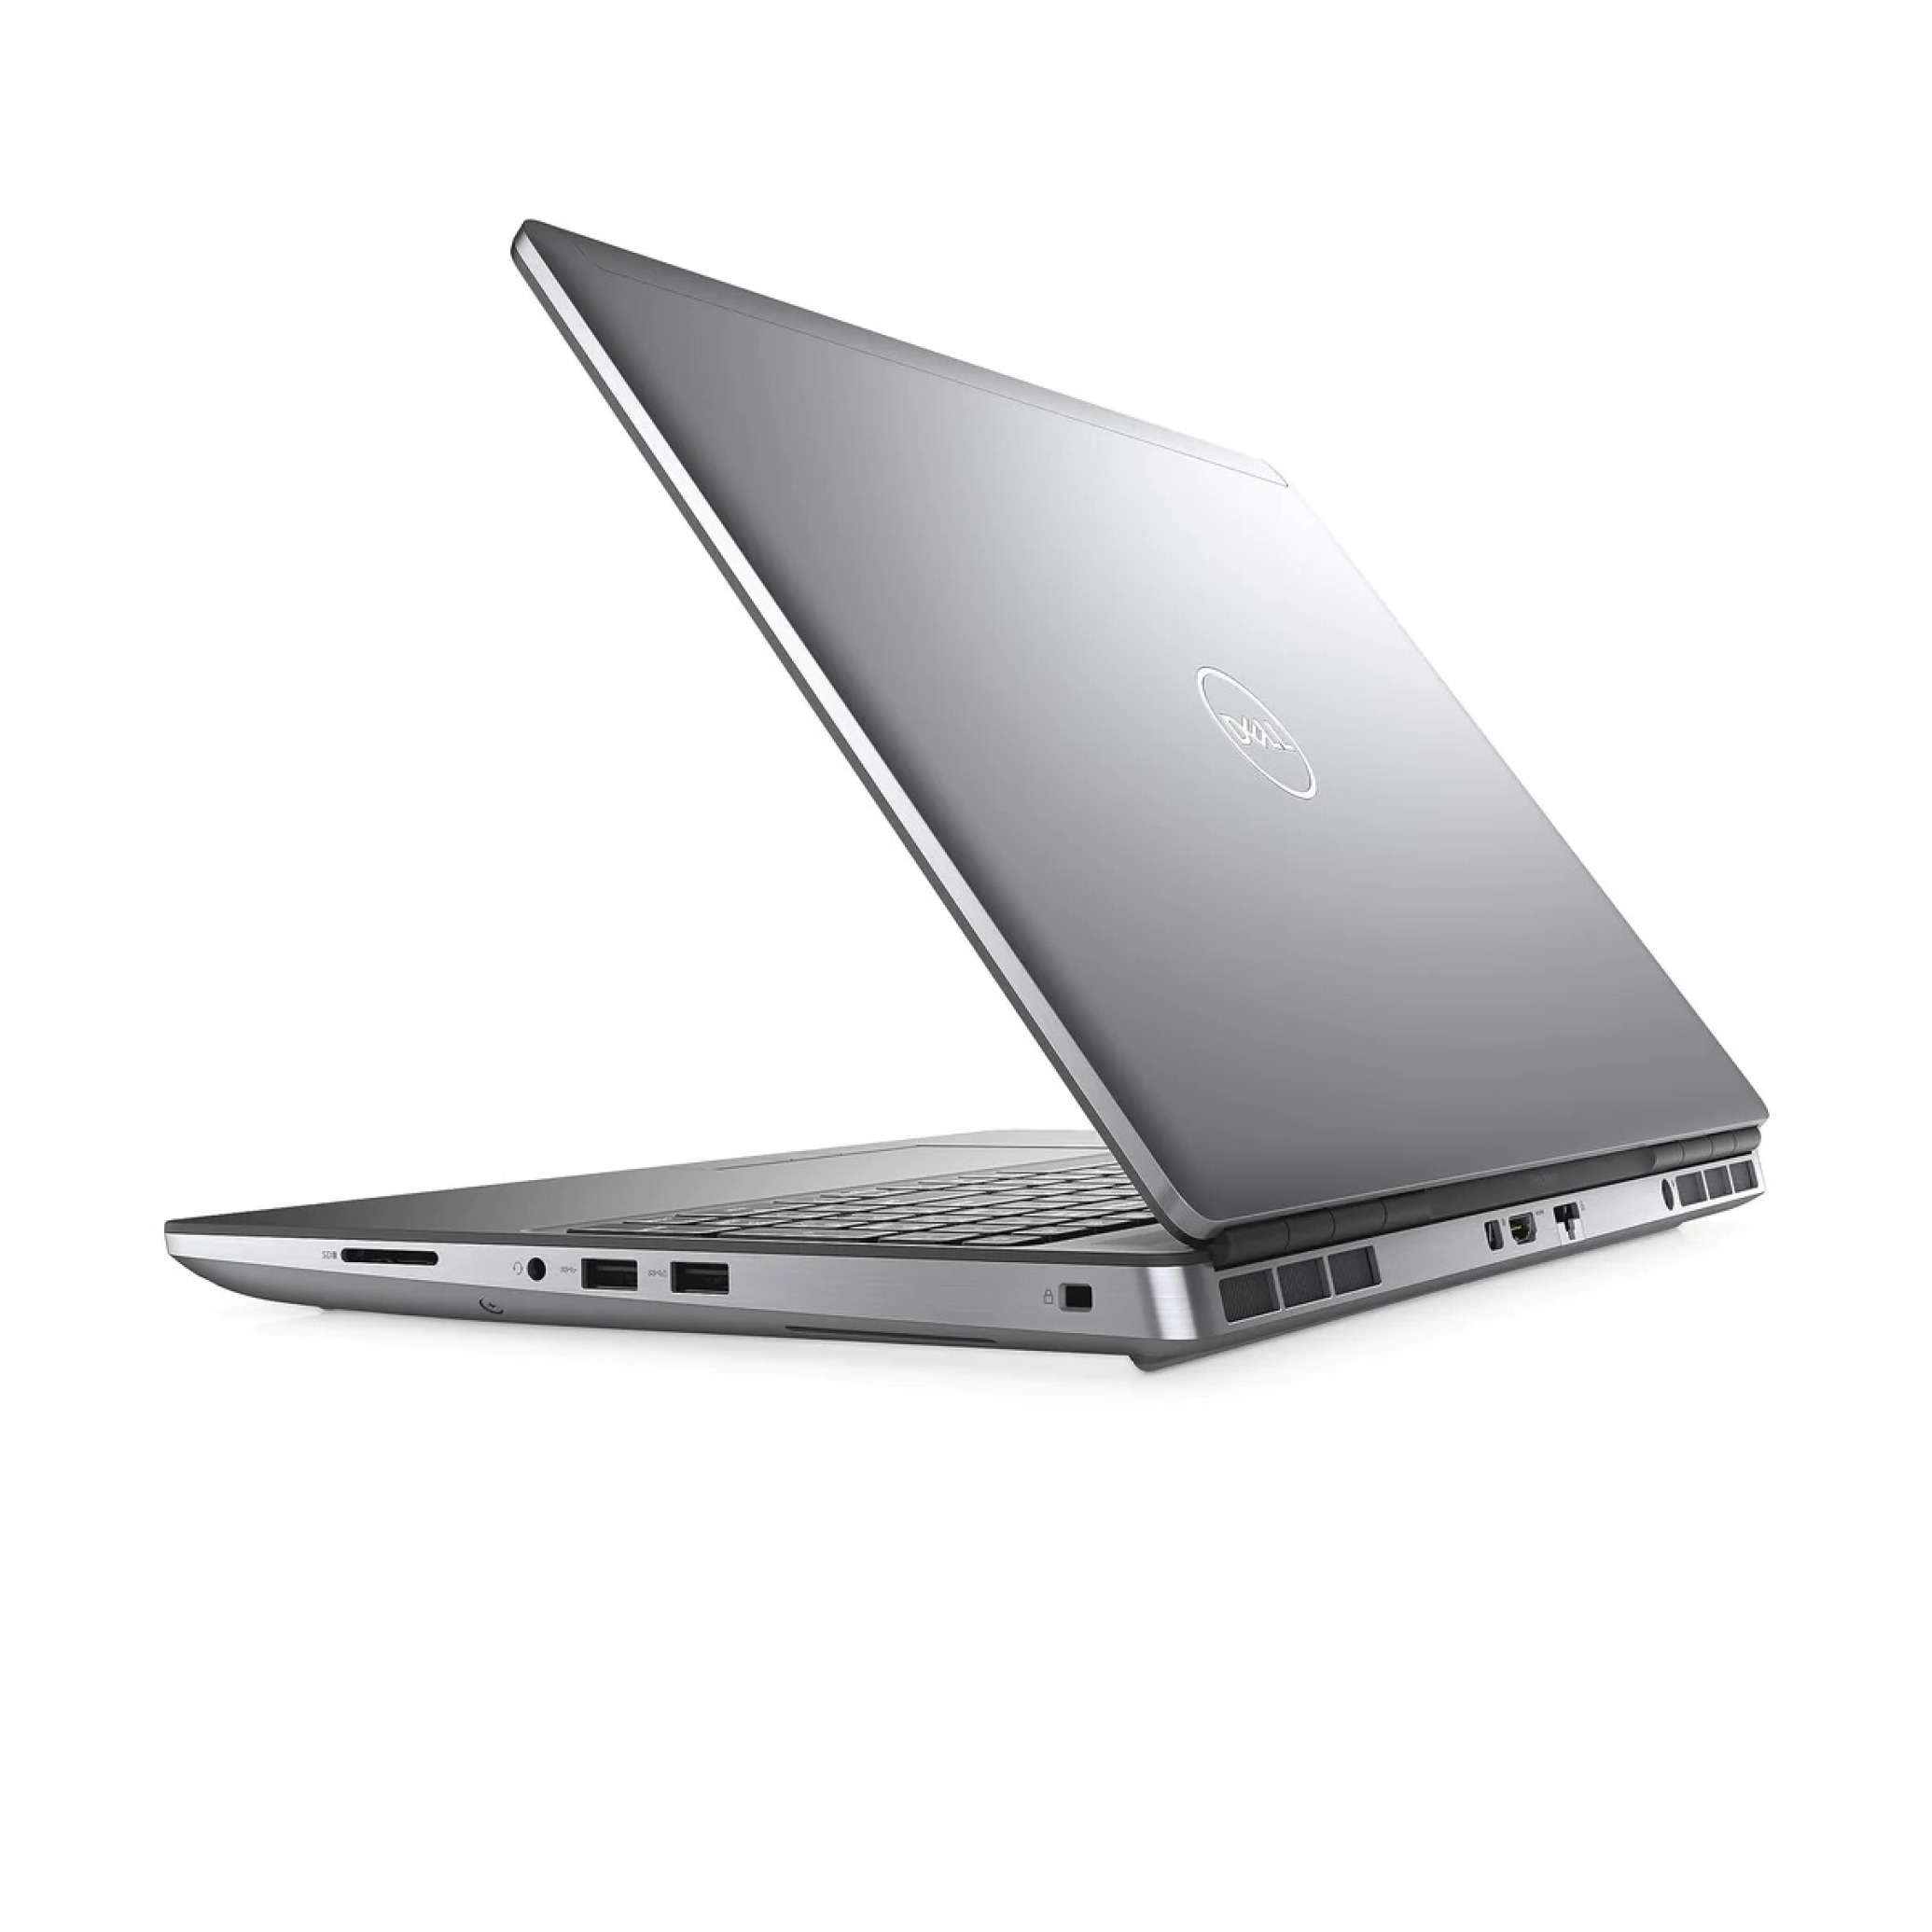  لپ تاپ 15.6 اینچی DELL مدل Precision 7550 پردازنده زئون گرافیک RTX A3000 6GB | لاکچری لپتاپ 